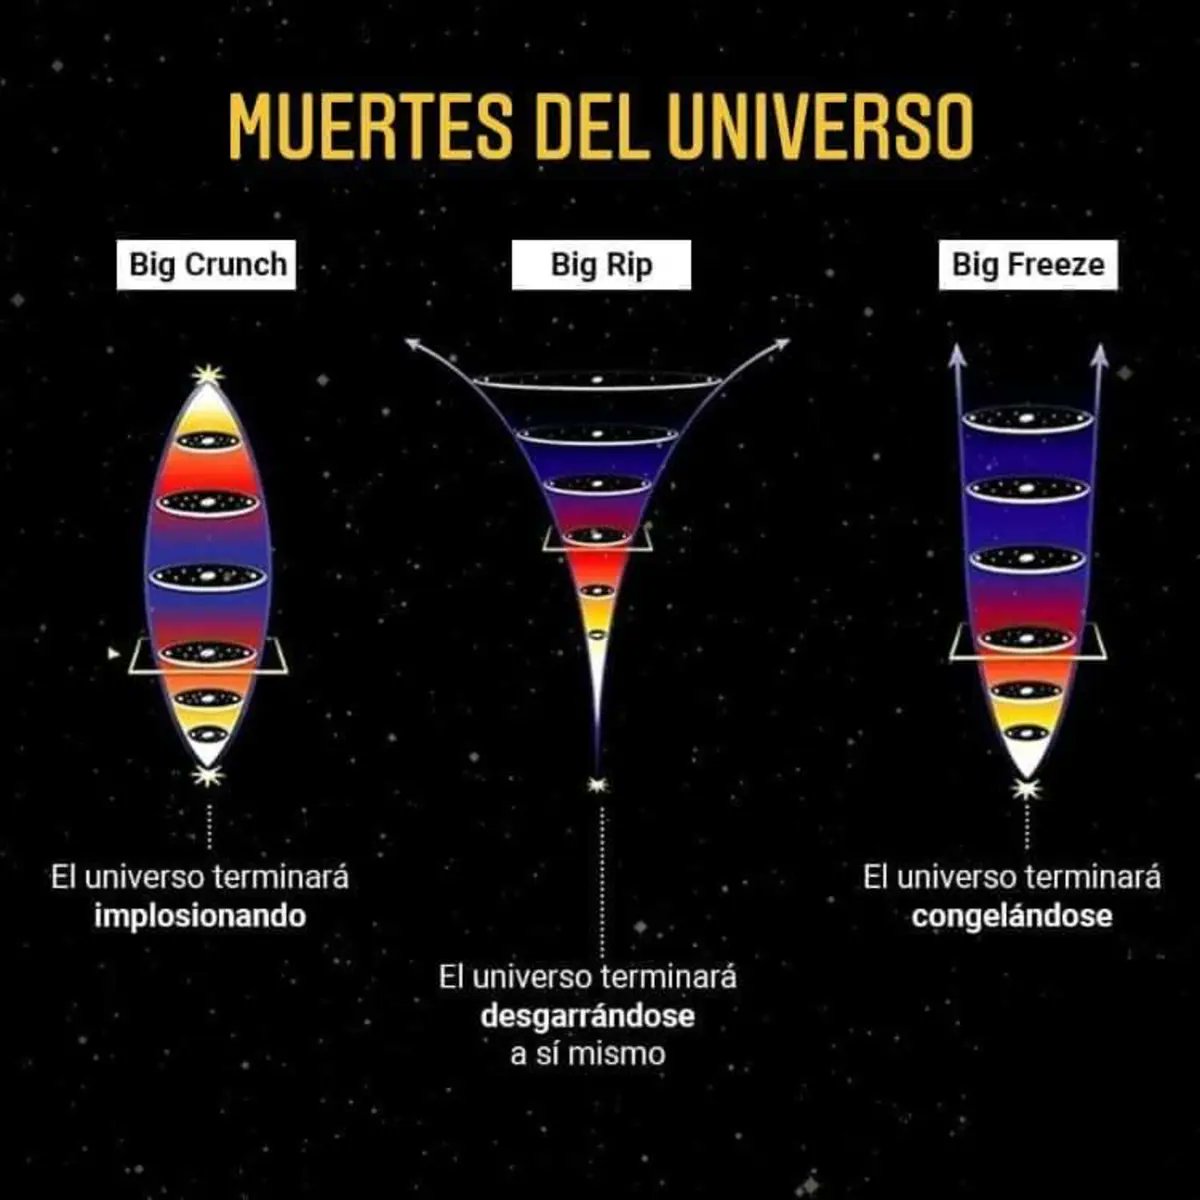 Más Ciencia on X: "Posibles muertes del universo https://t.co/O86N0wCBBu" /  X